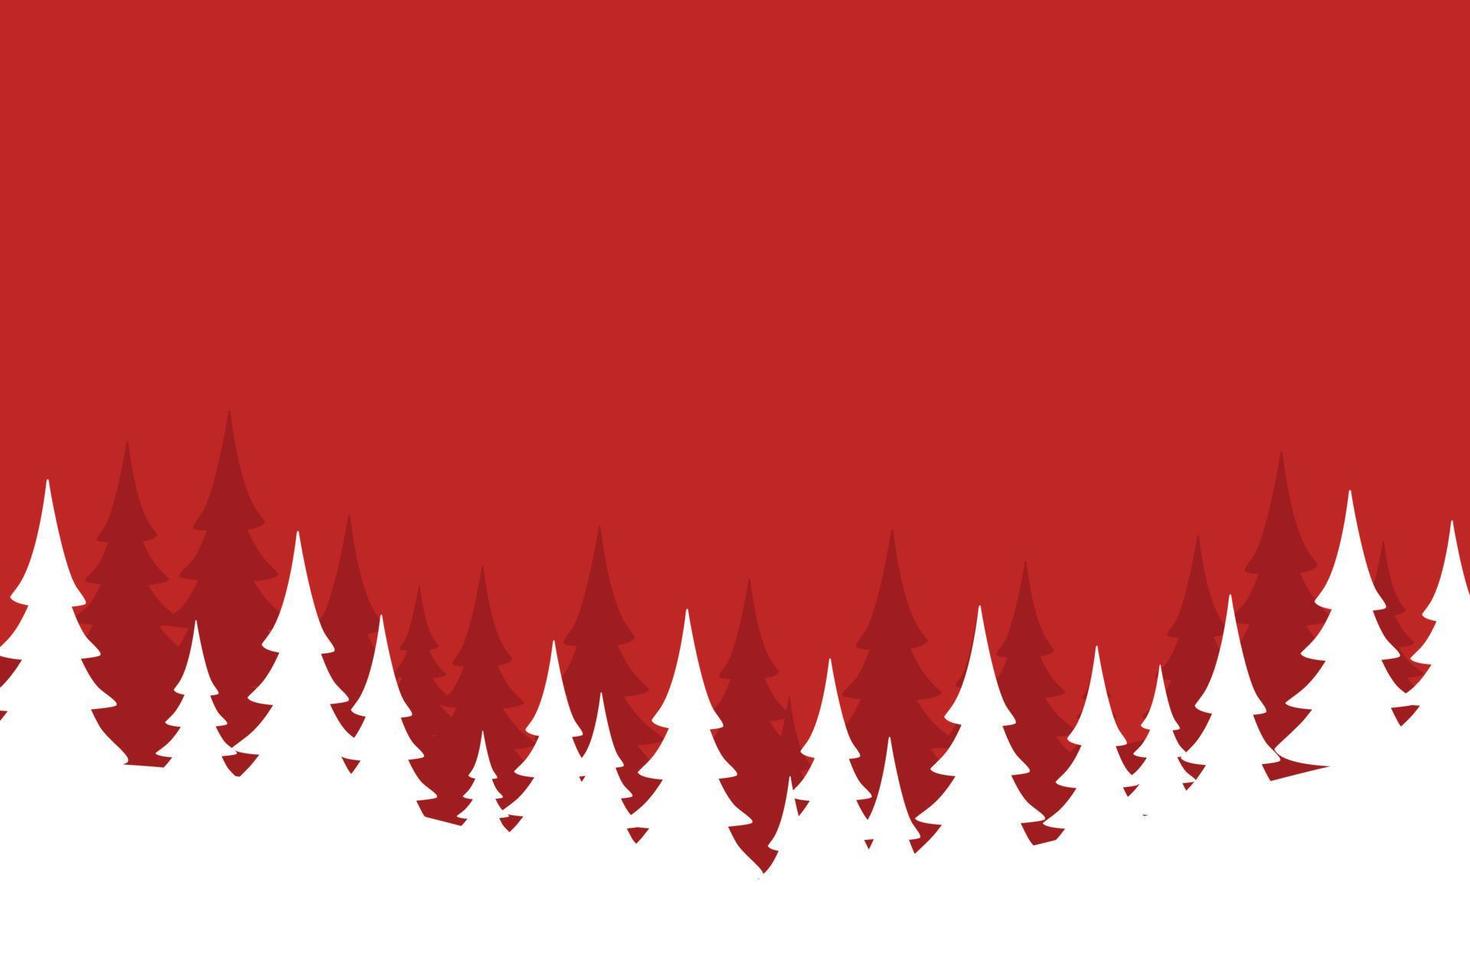 vrolijk kerstfeest met kerstboom op rode achtergrond. vector